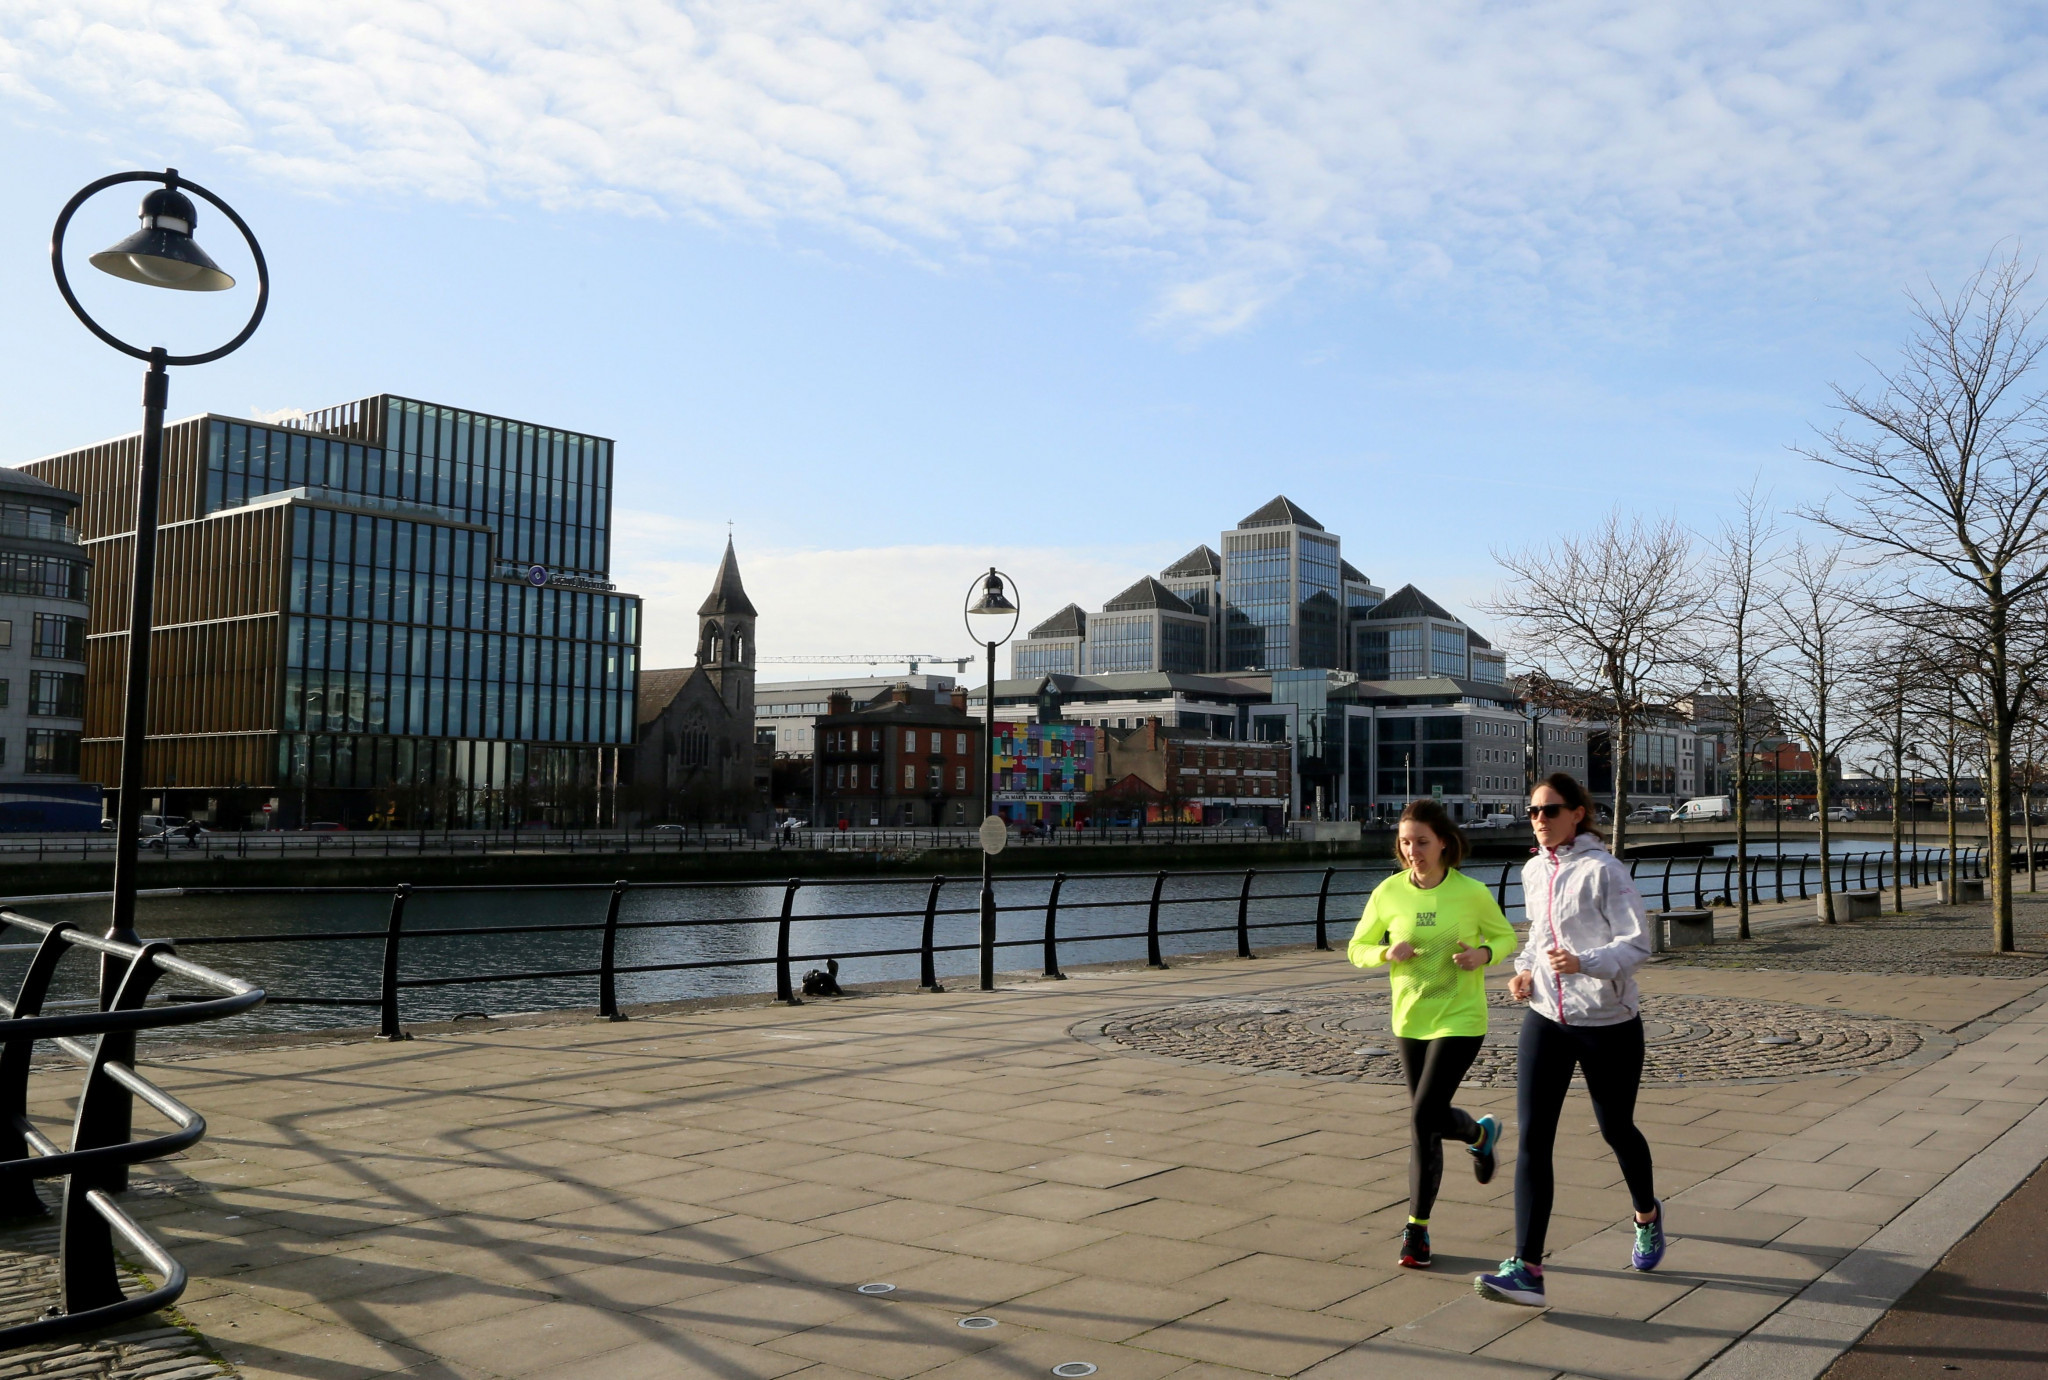 Dublin Marathon cancelled again due to COVID-19